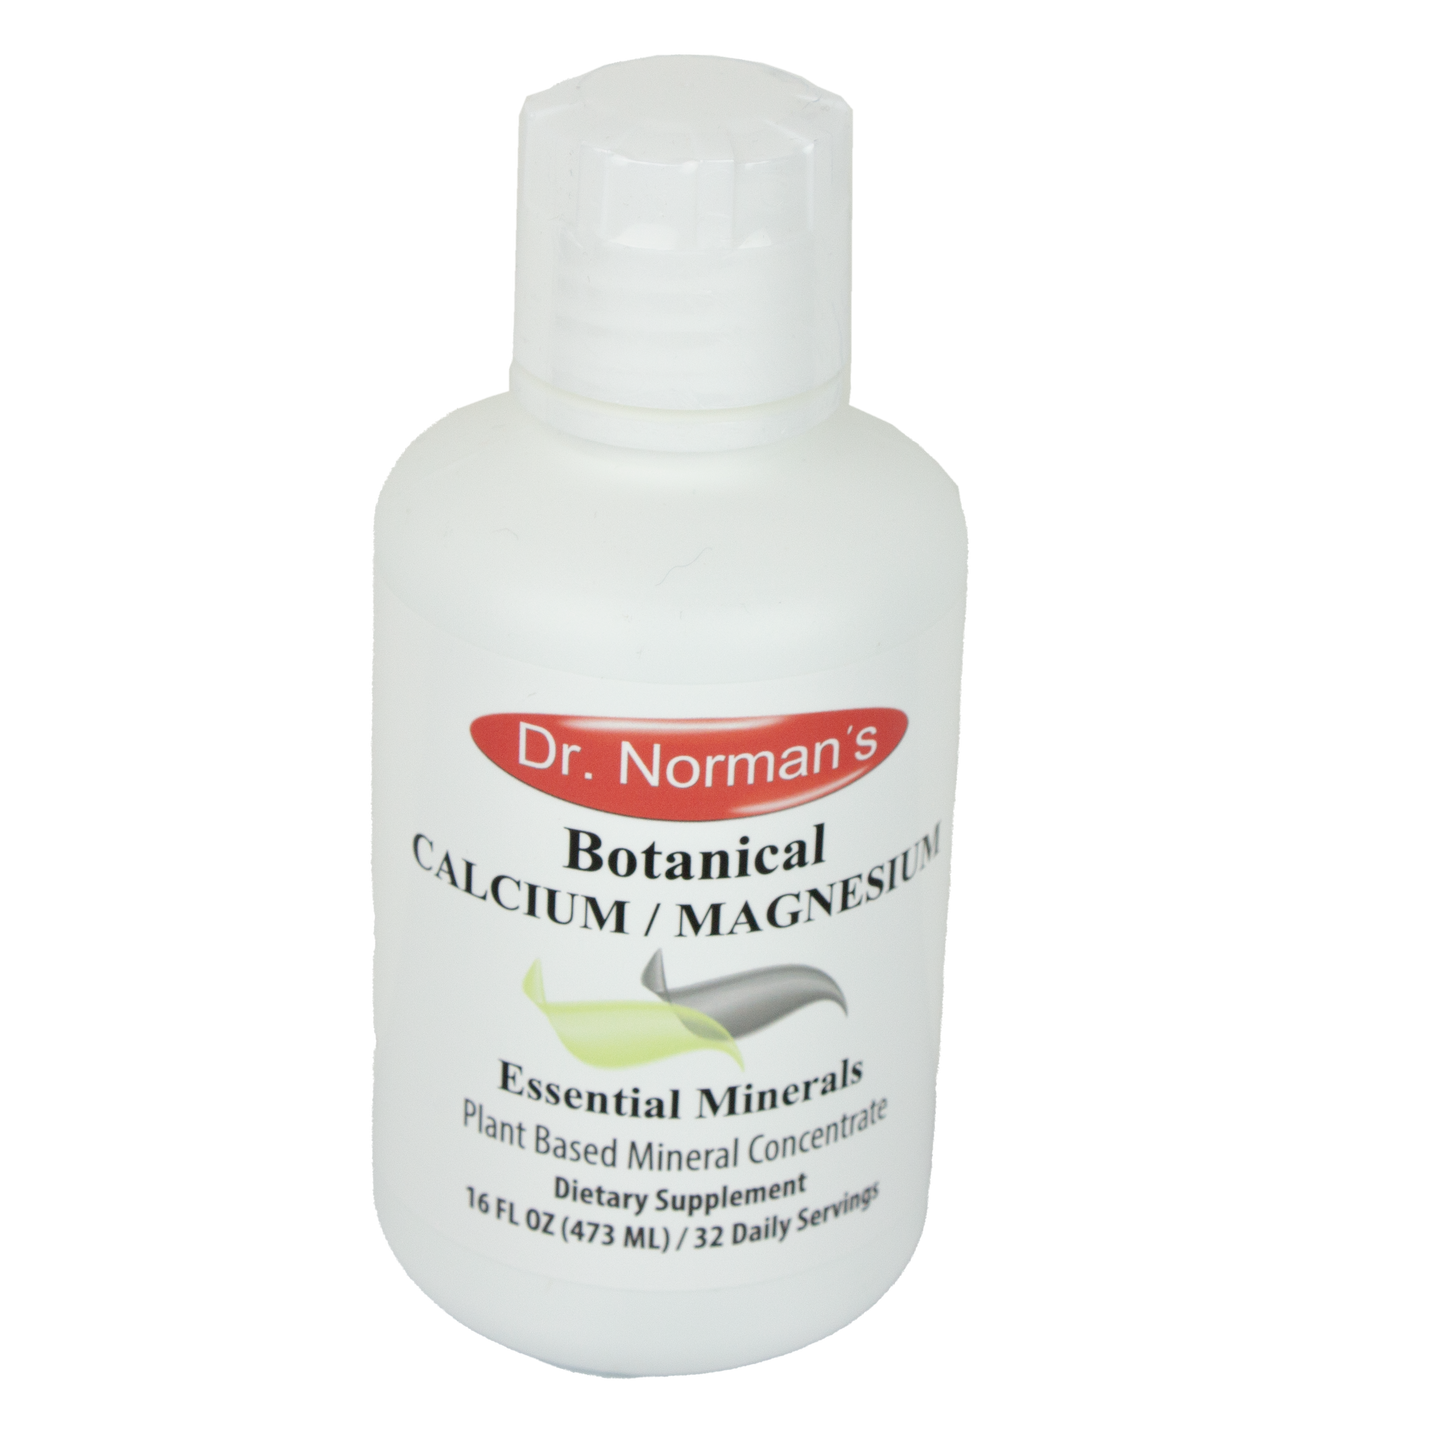 Dr. Norman's Essential Minerals - Botanical Calcium y Magnesium (16 oz)